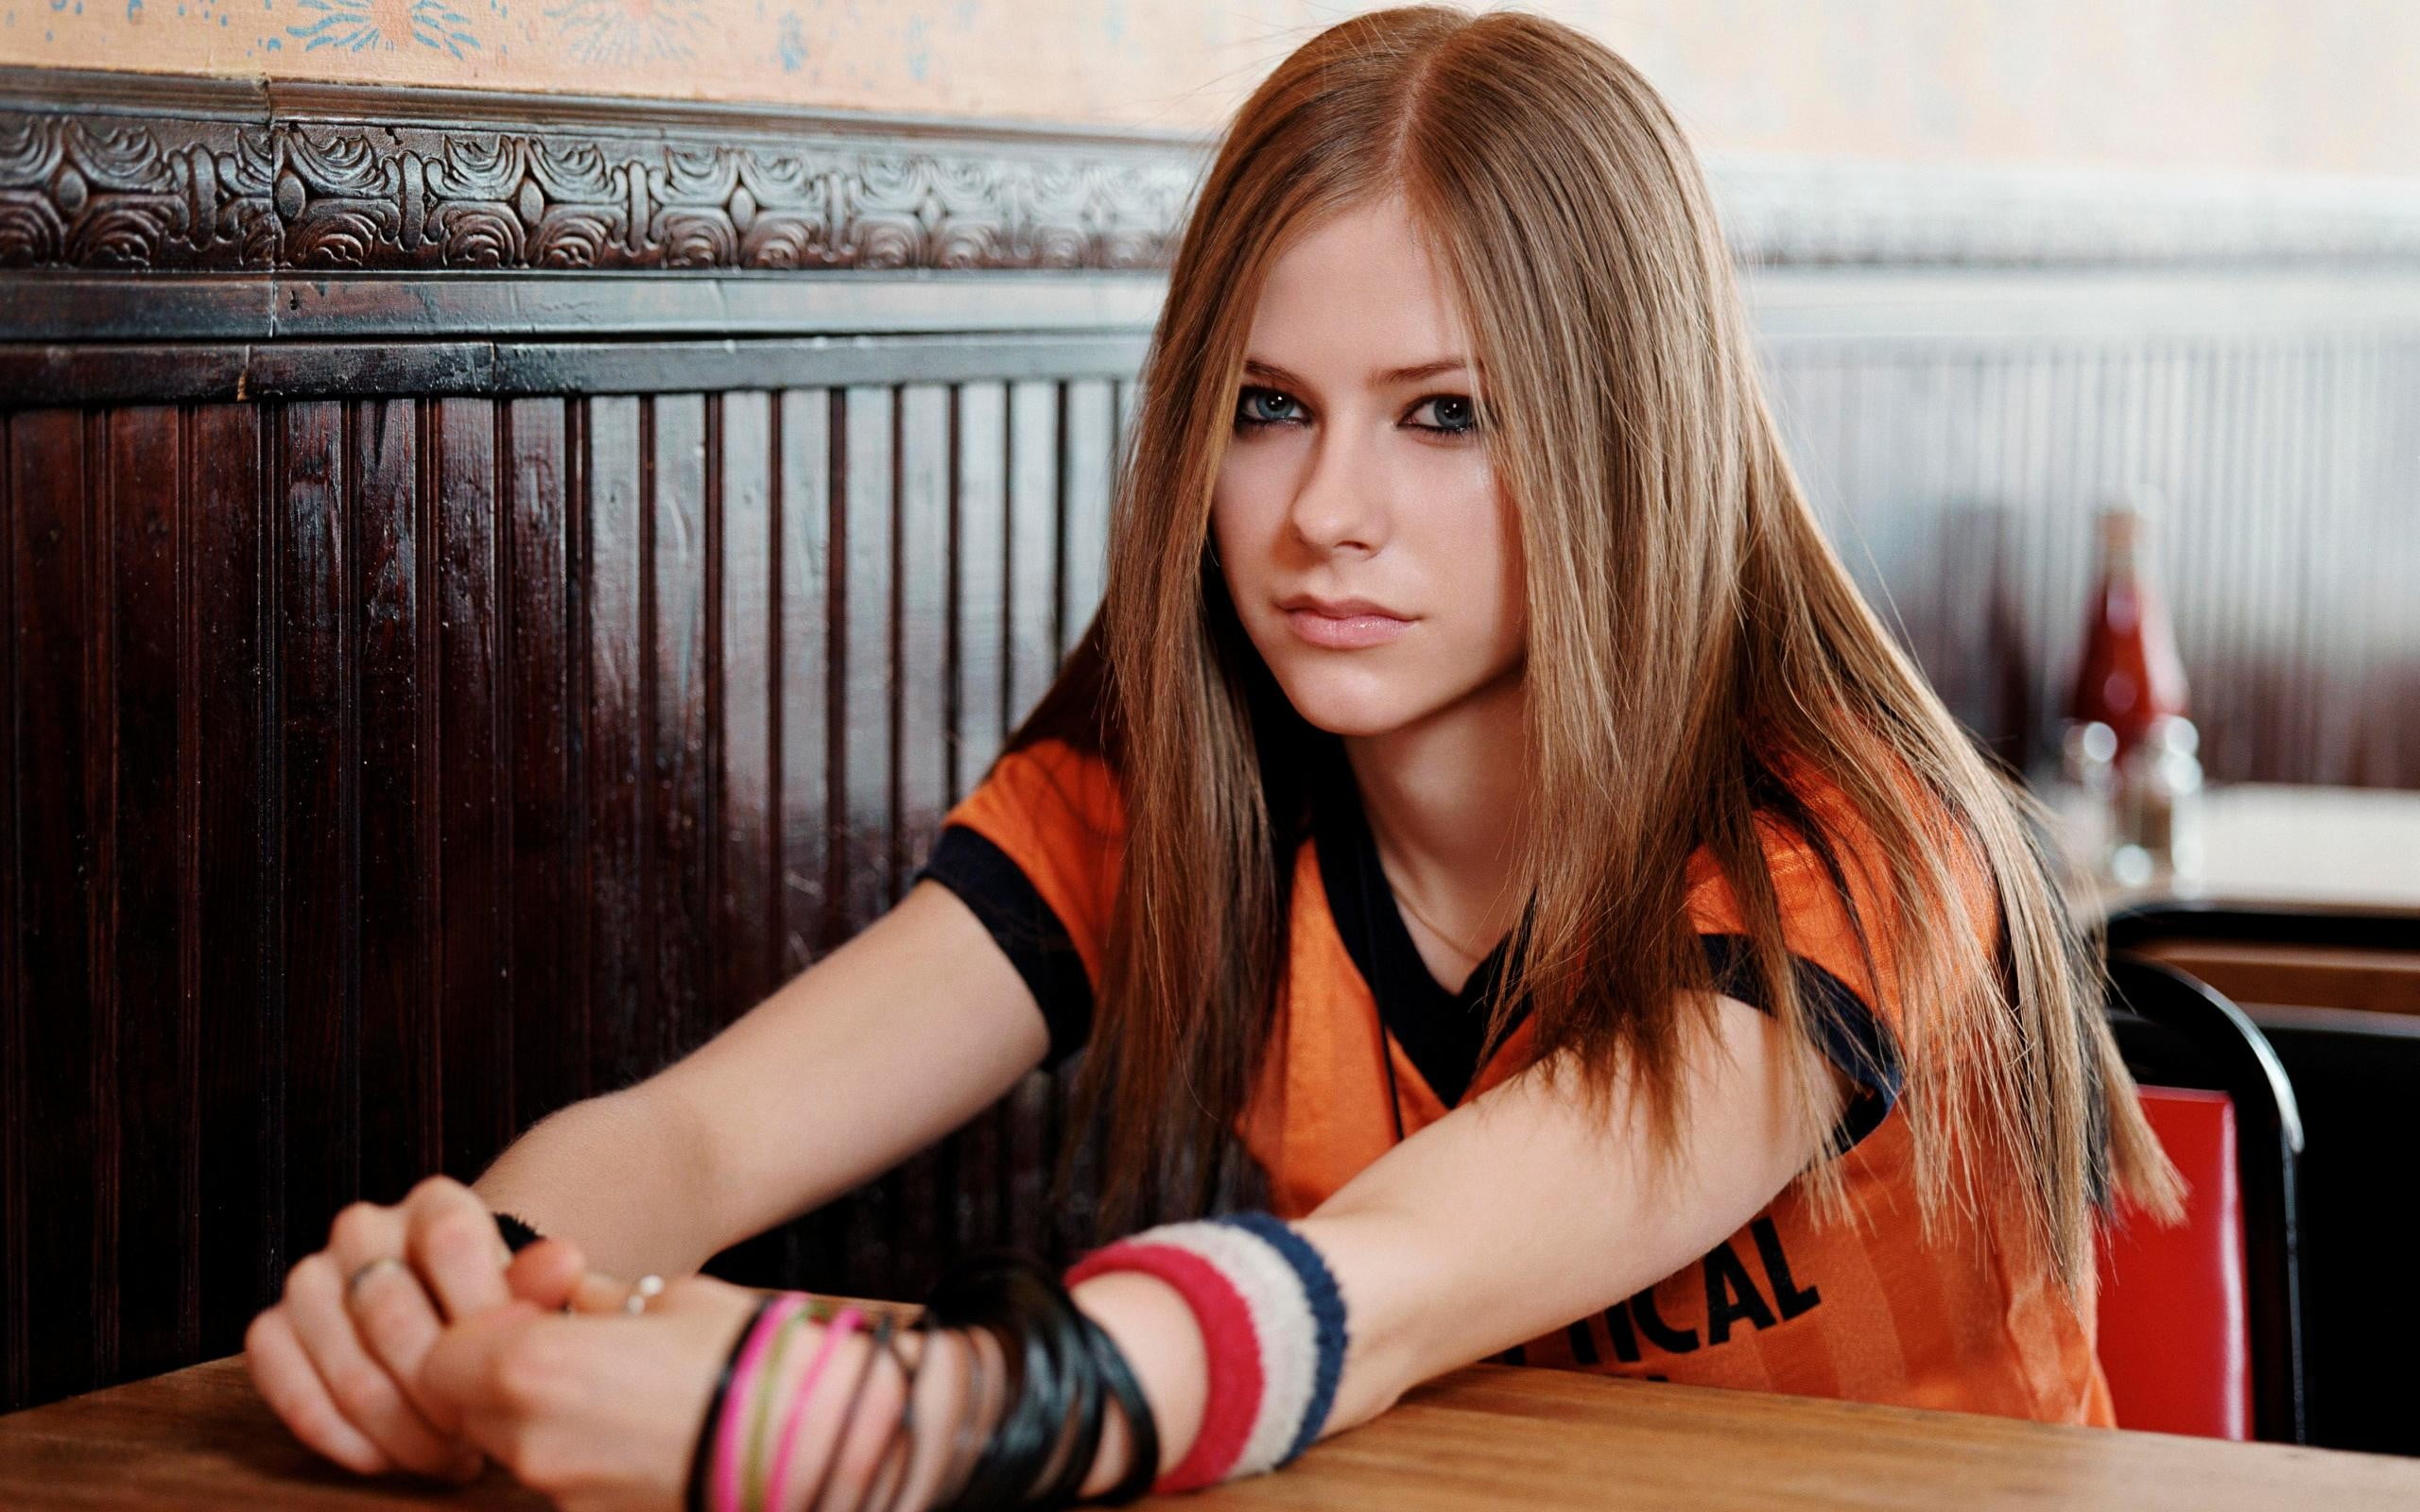 9. Avril Lavigne - wide 4